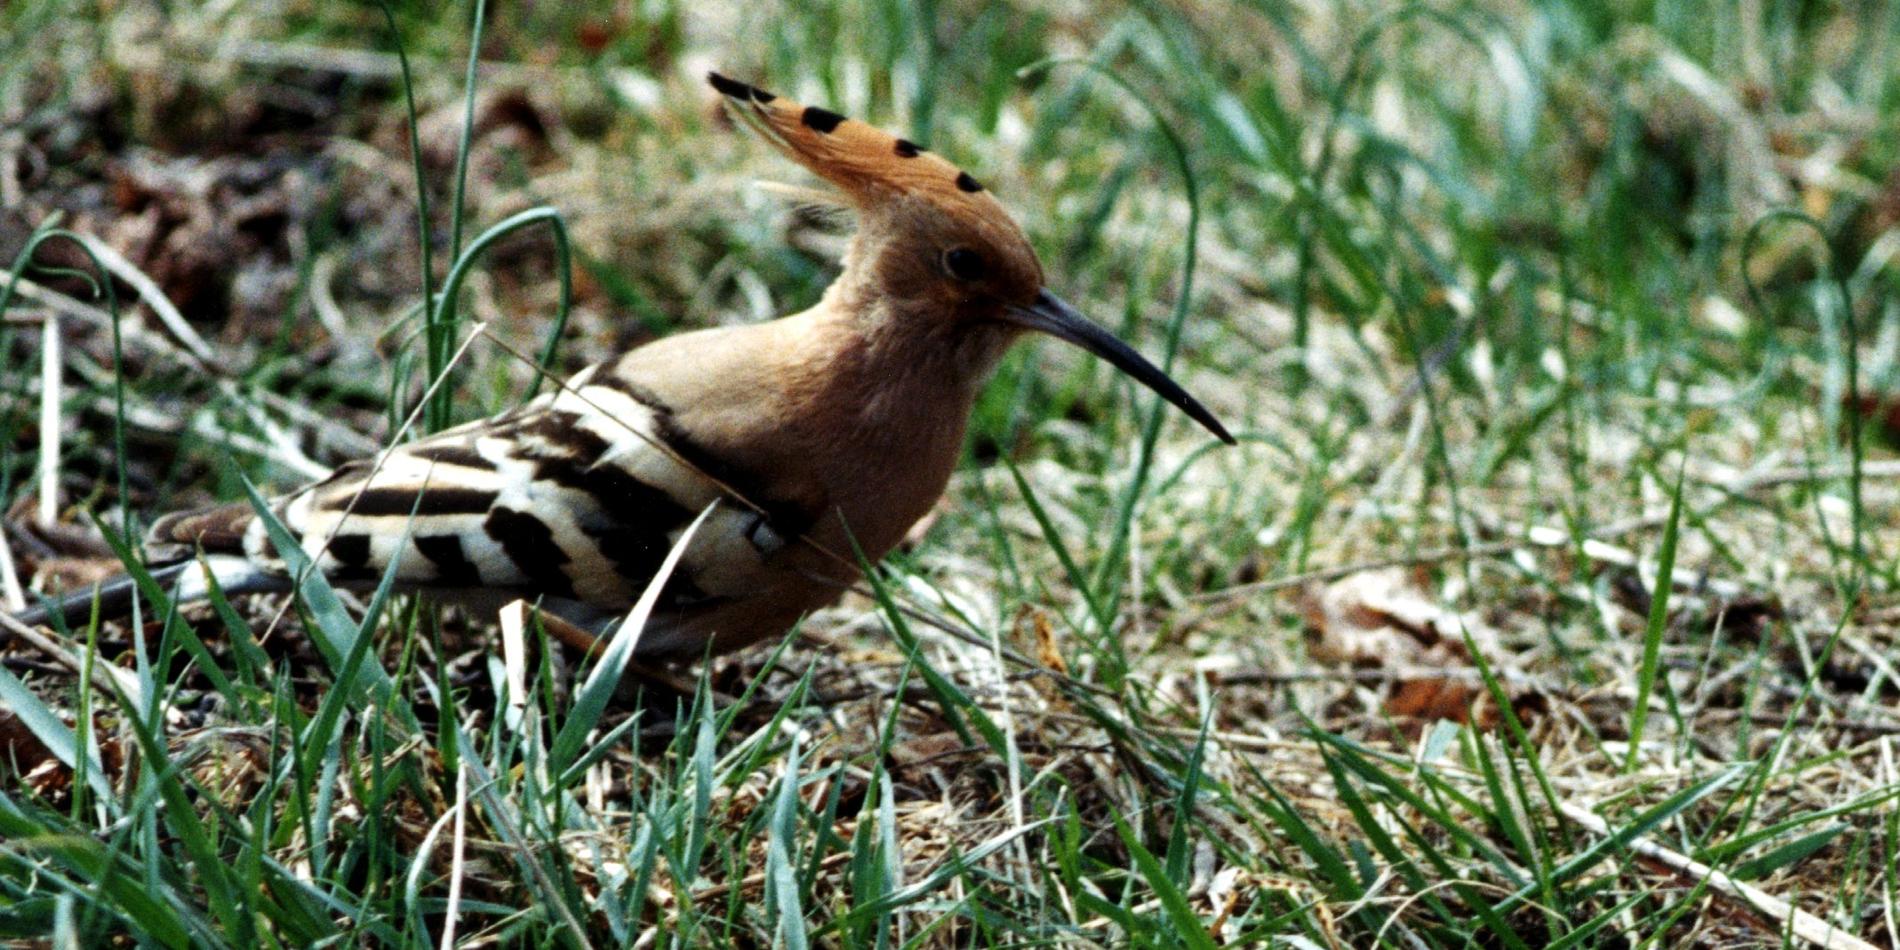 Härfågeln är fridlyst och rödlistad som nationellt utdöd. Arkivbild från 1996.